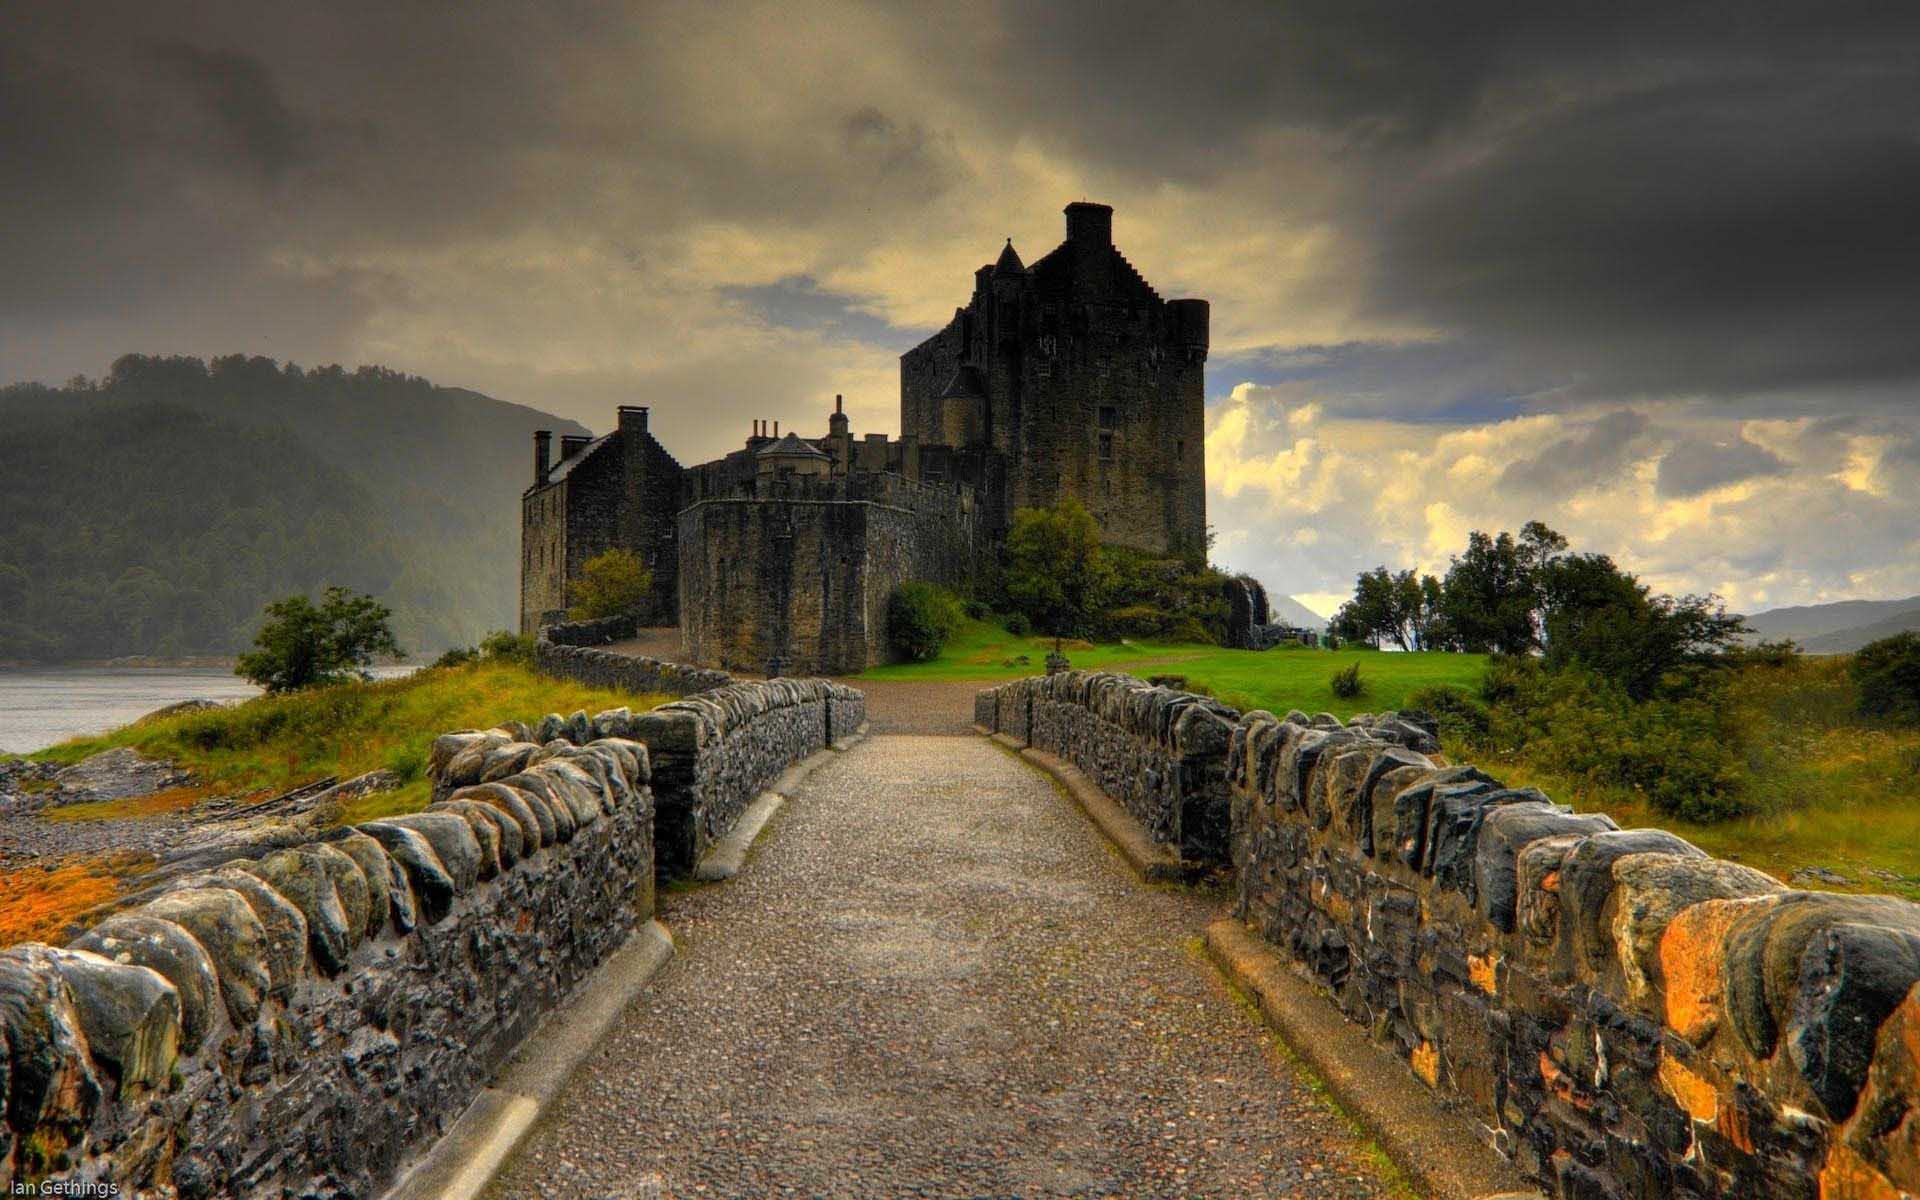 Castle Landscape Wallpapers - Top Free Castle Landscape Backgrounds ...